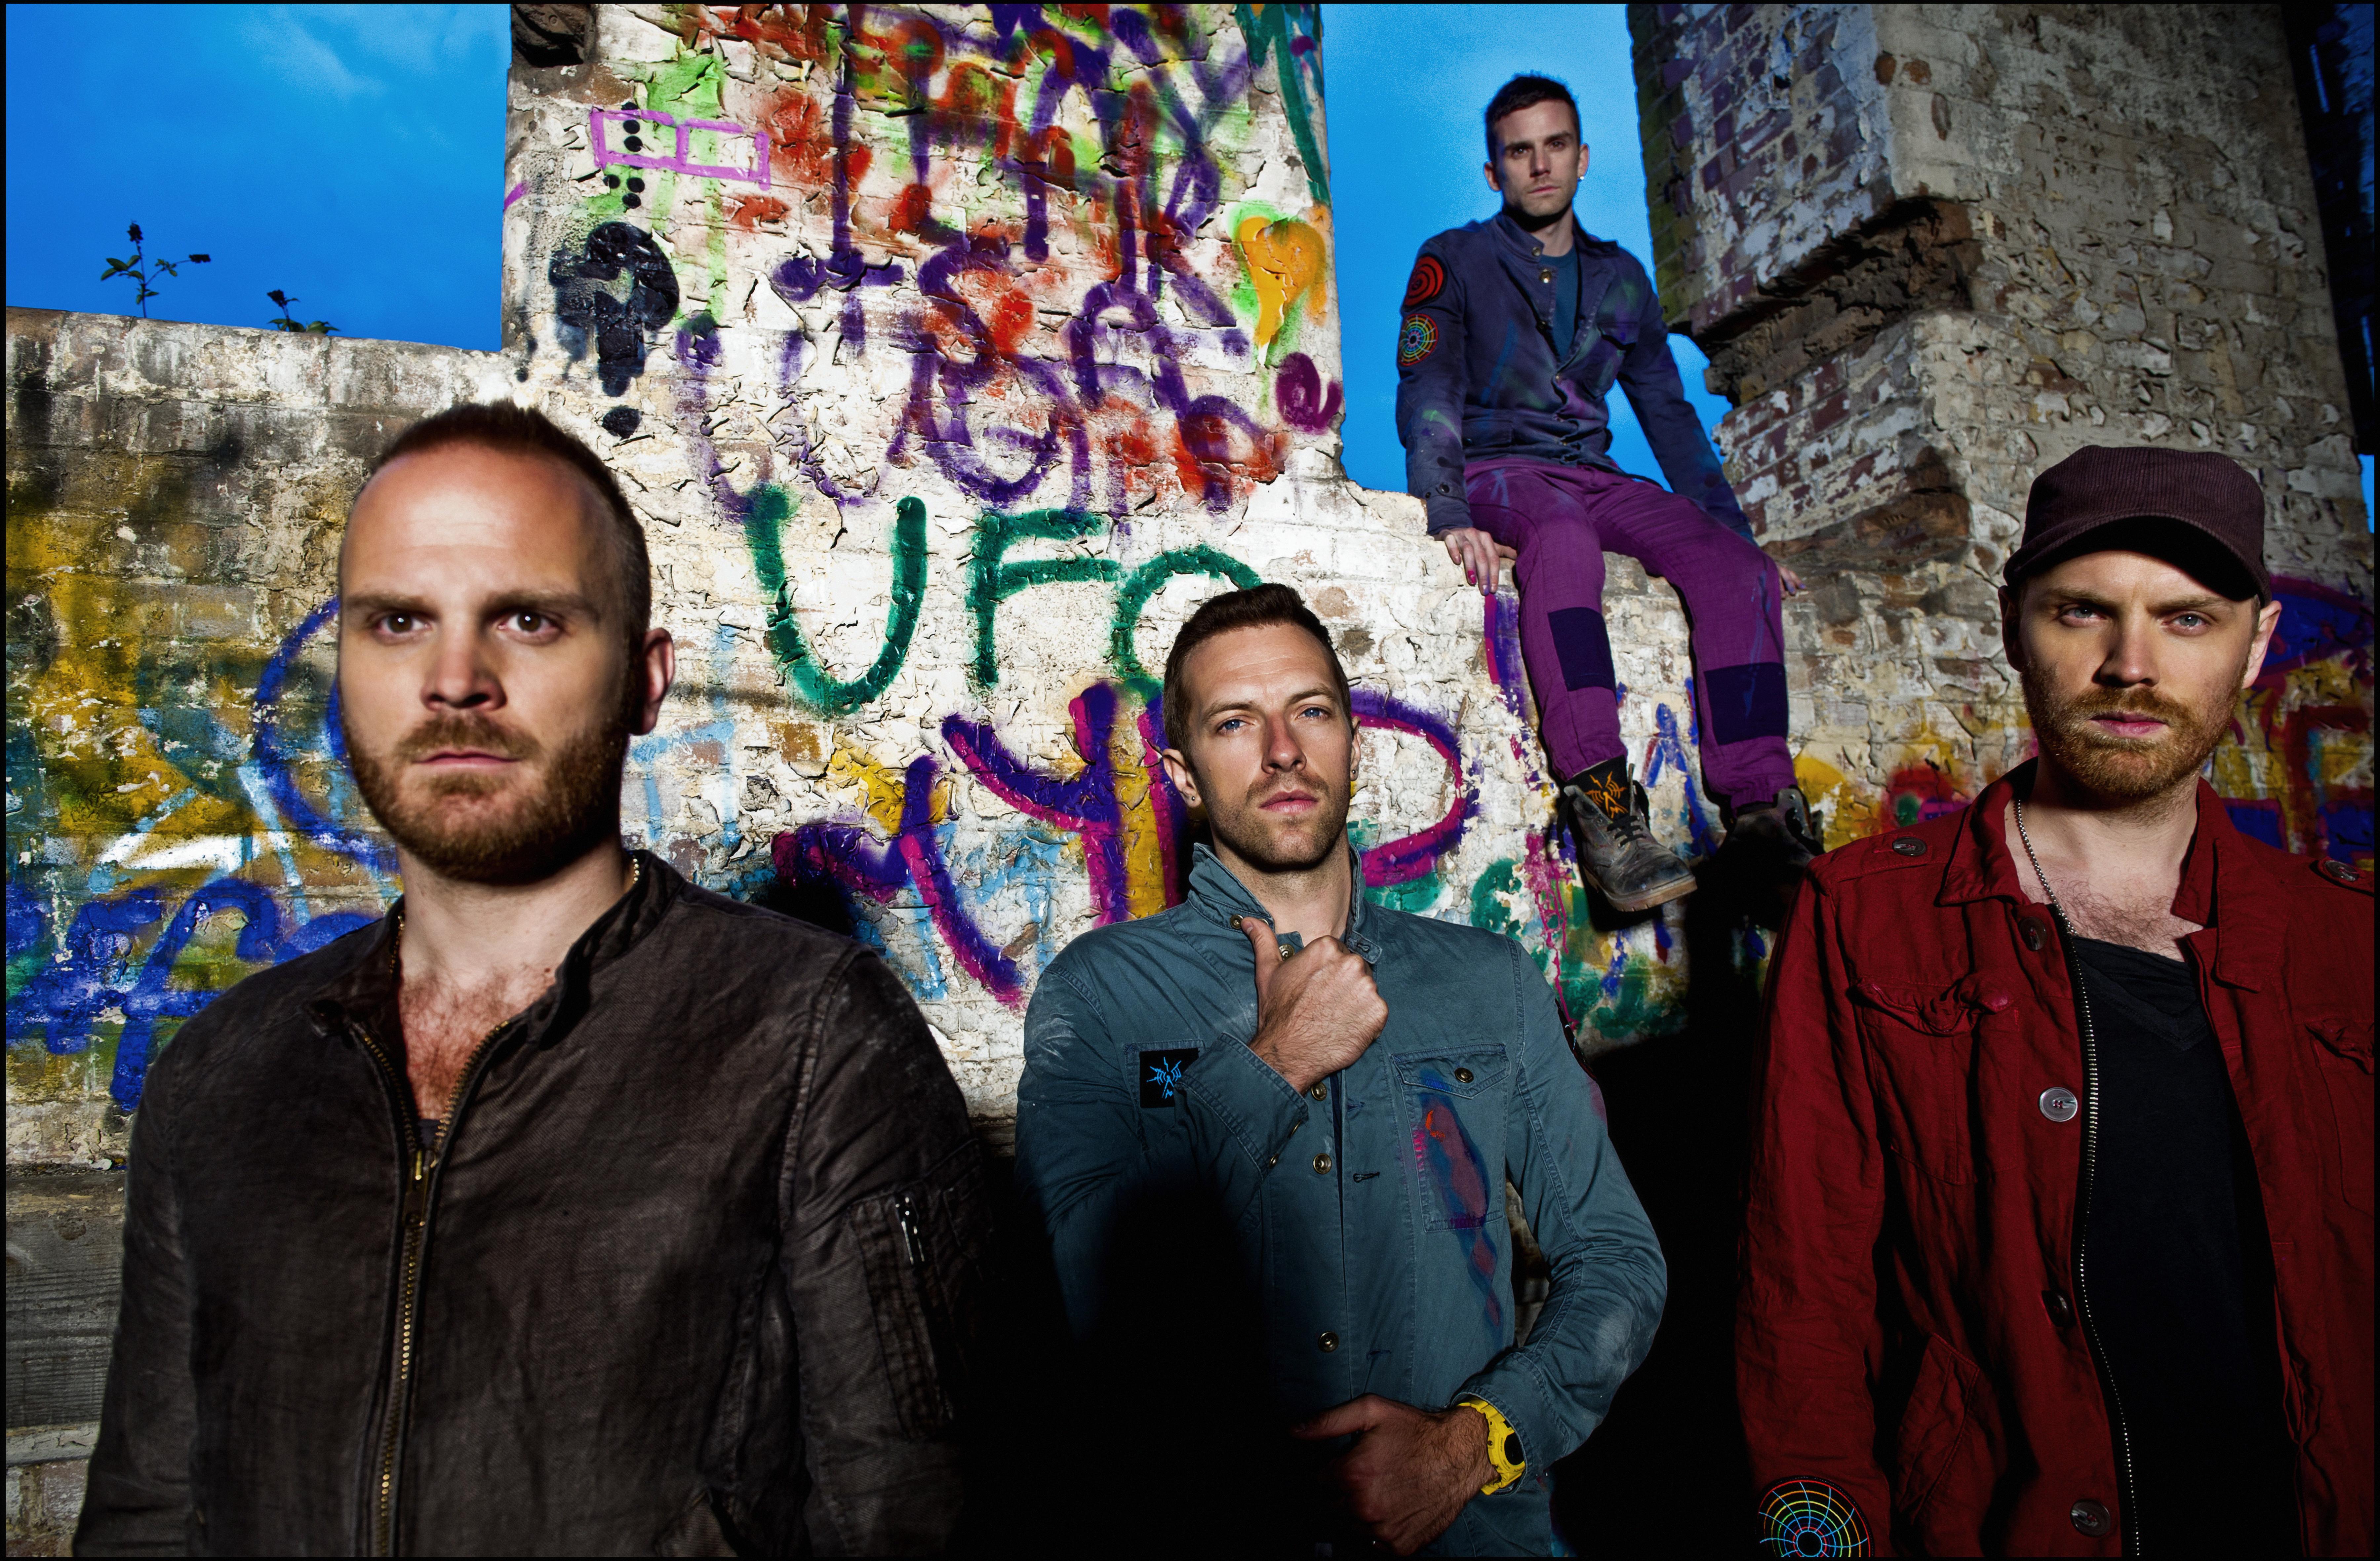 Lyt til Coldplays nye sang "Up In Flames"